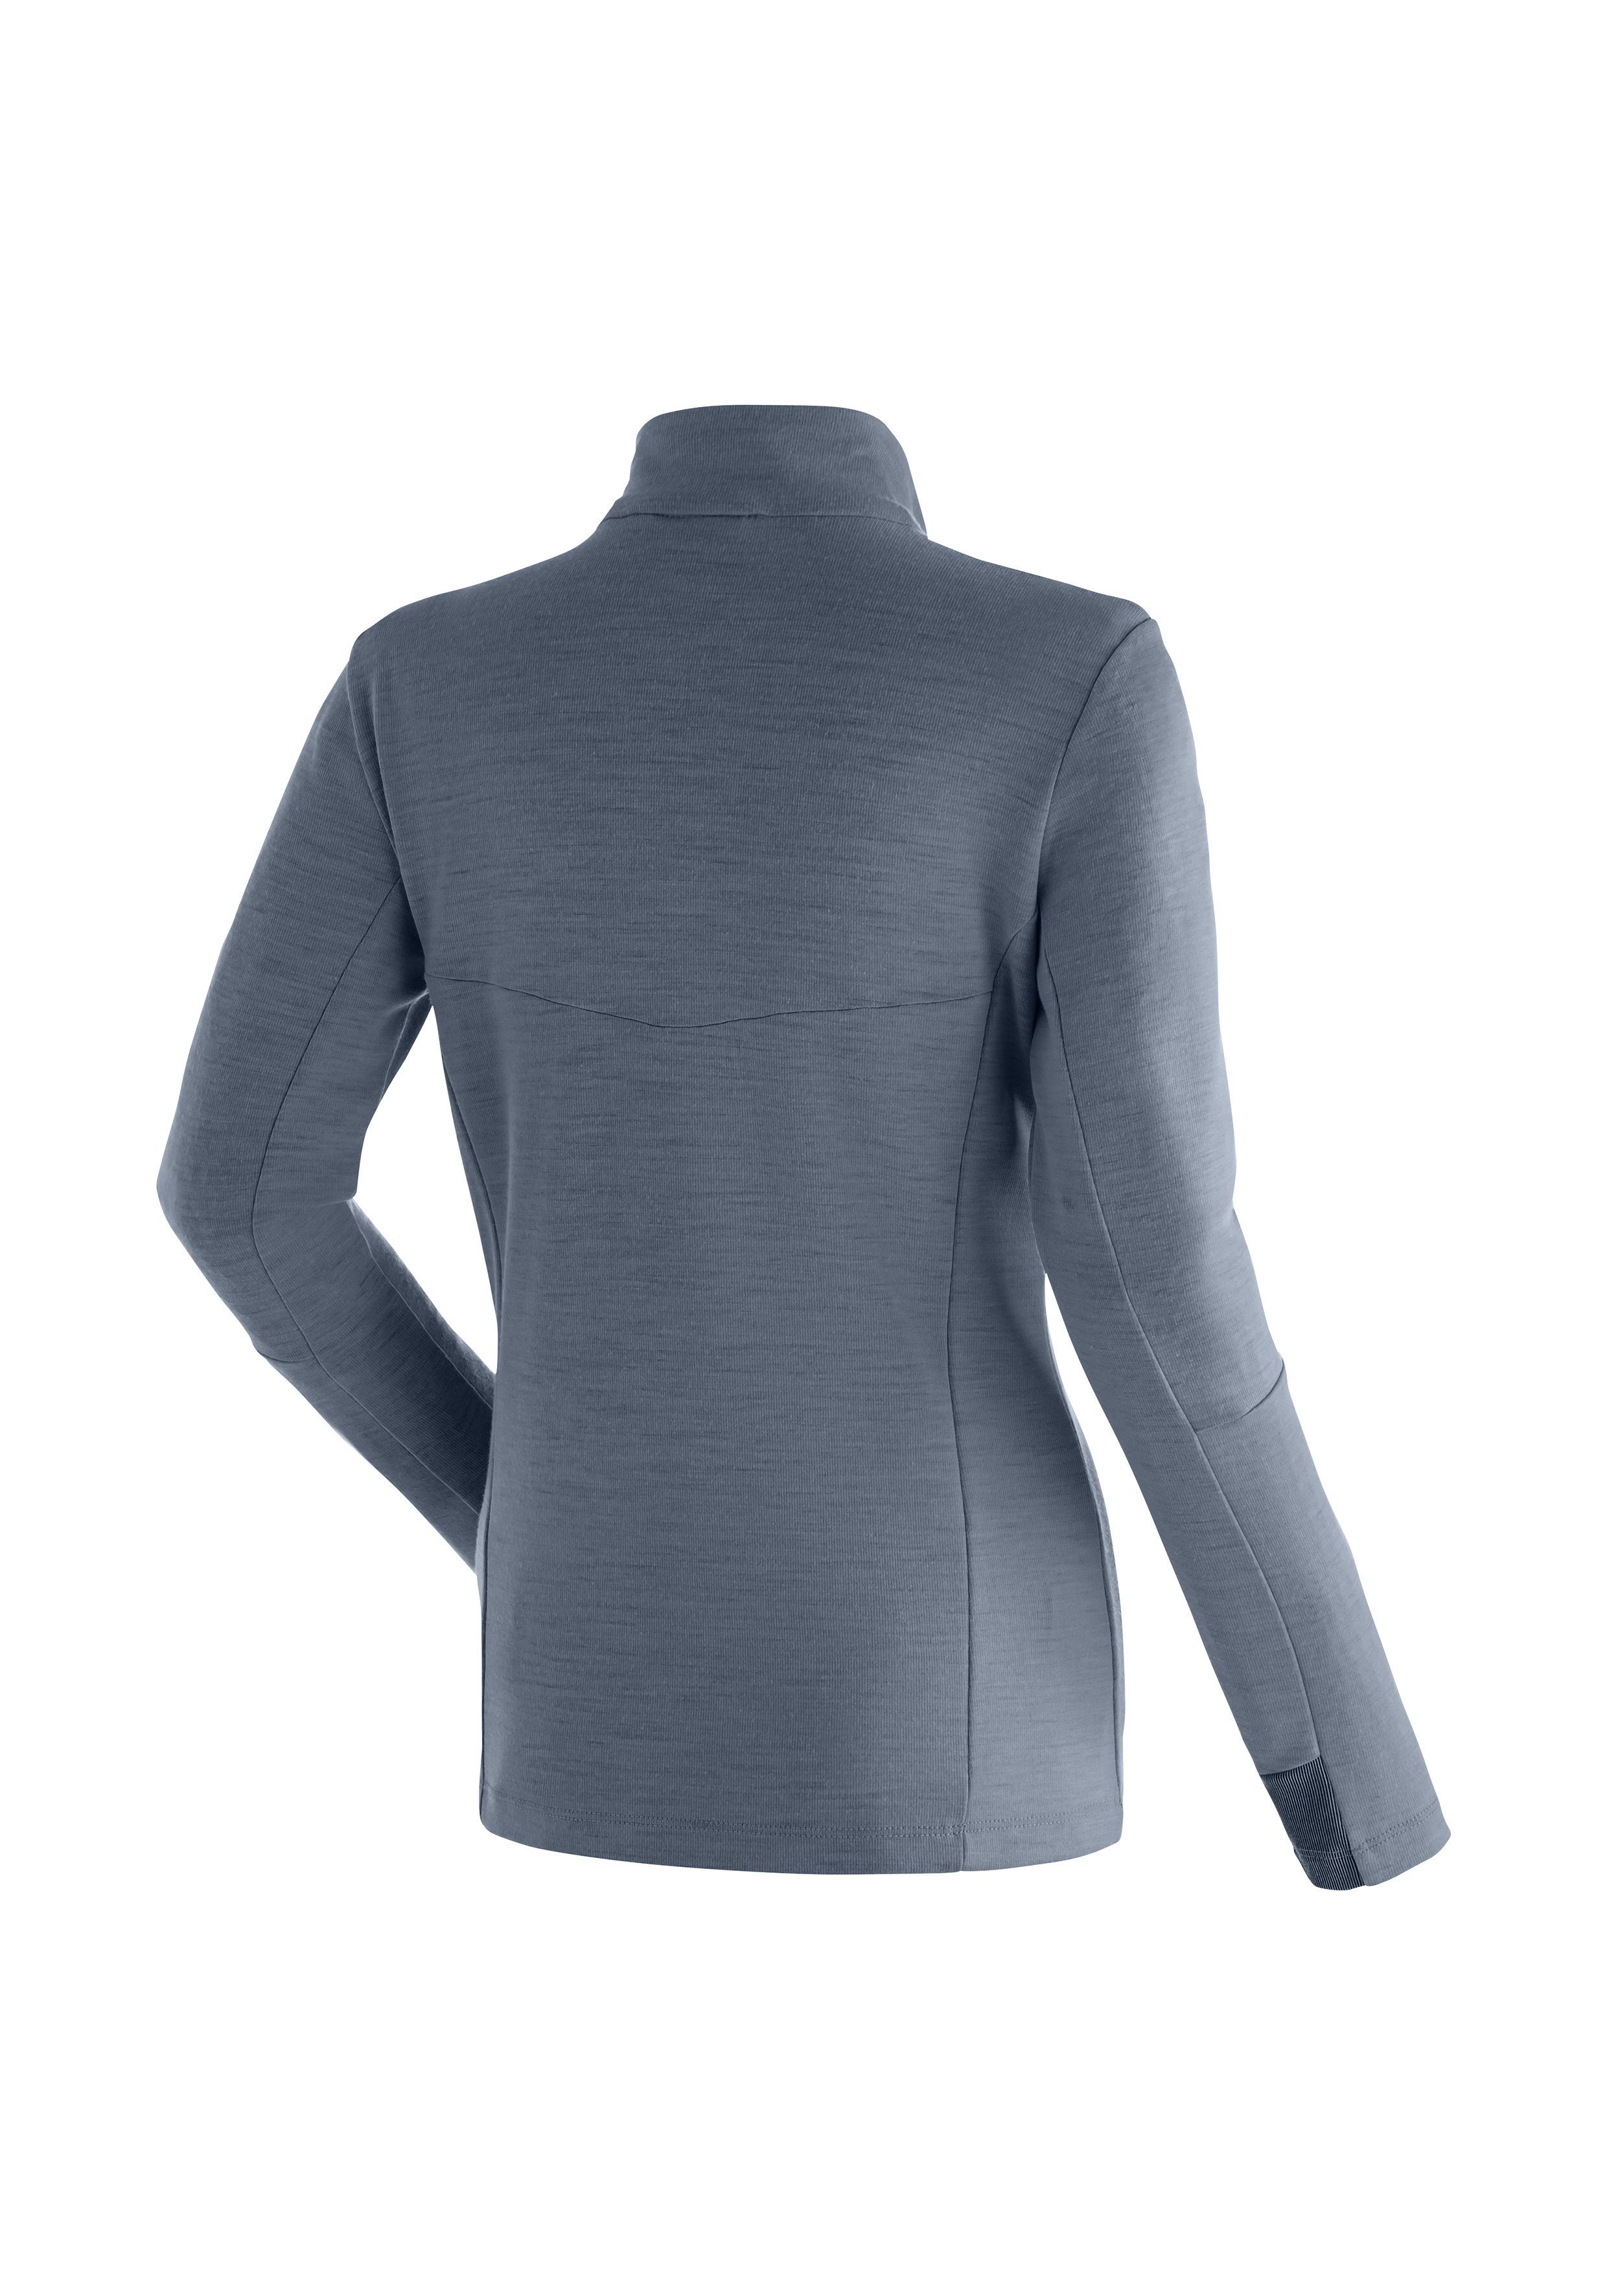 Maier Sports Funktionsshirt für graublau Midlayer Atmungsaktivität funktionaler Skutvik W hohe Damen, HZ